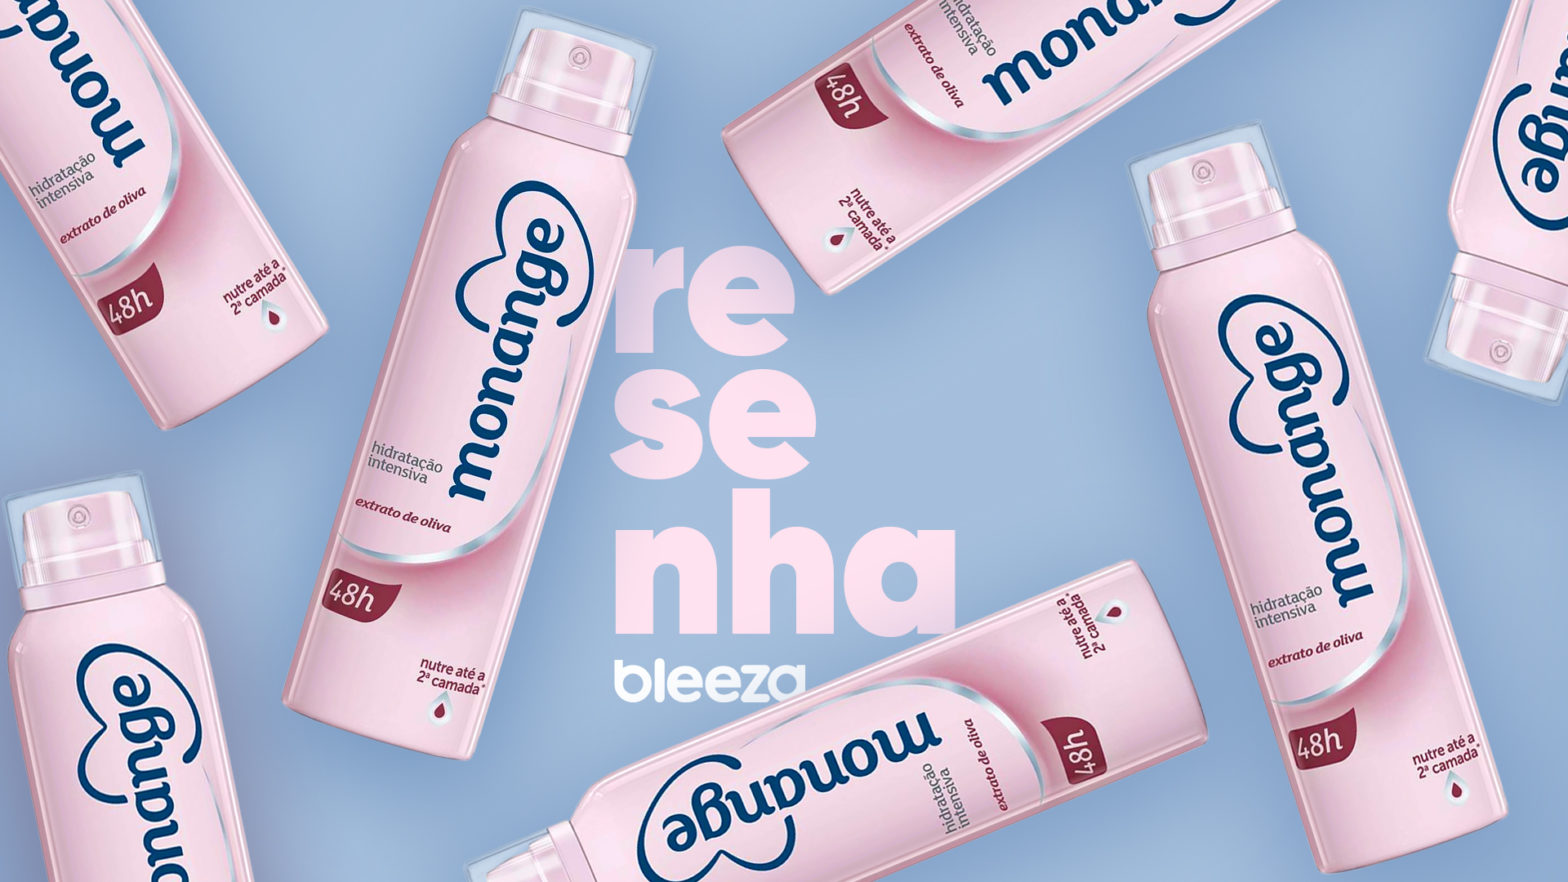 Resenha Desodorante Feminino Monange Hidratação Intensiva Extrato de Oliva.